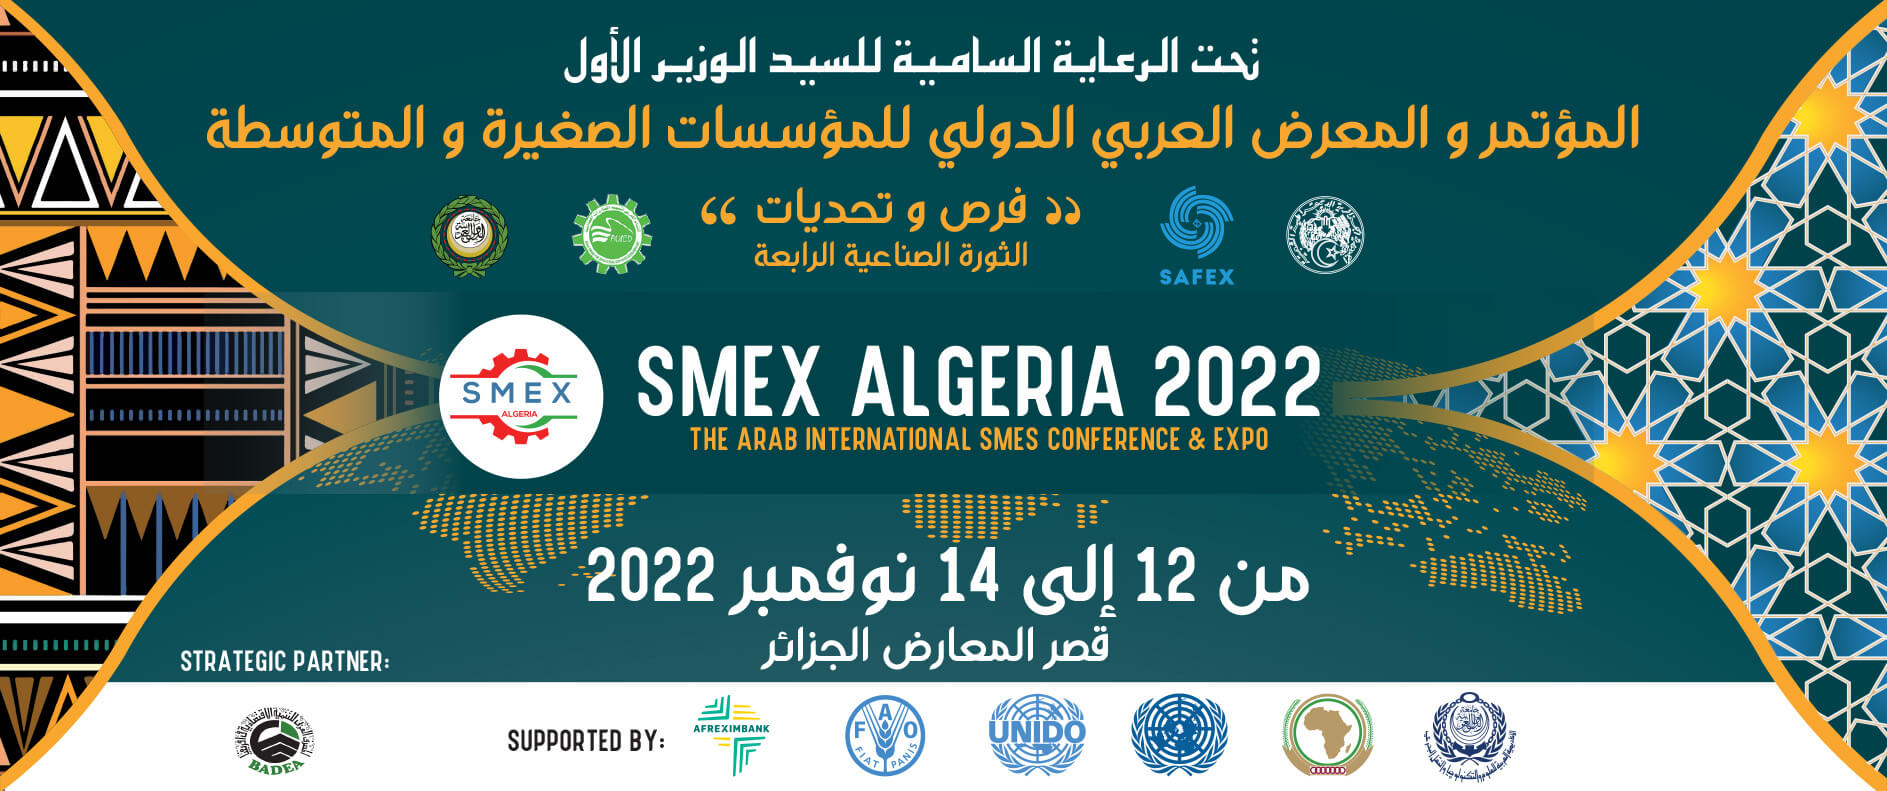 You are currently viewing Smex algeria :opportunités et défis de la nouvelle révolution industrielle 4.0